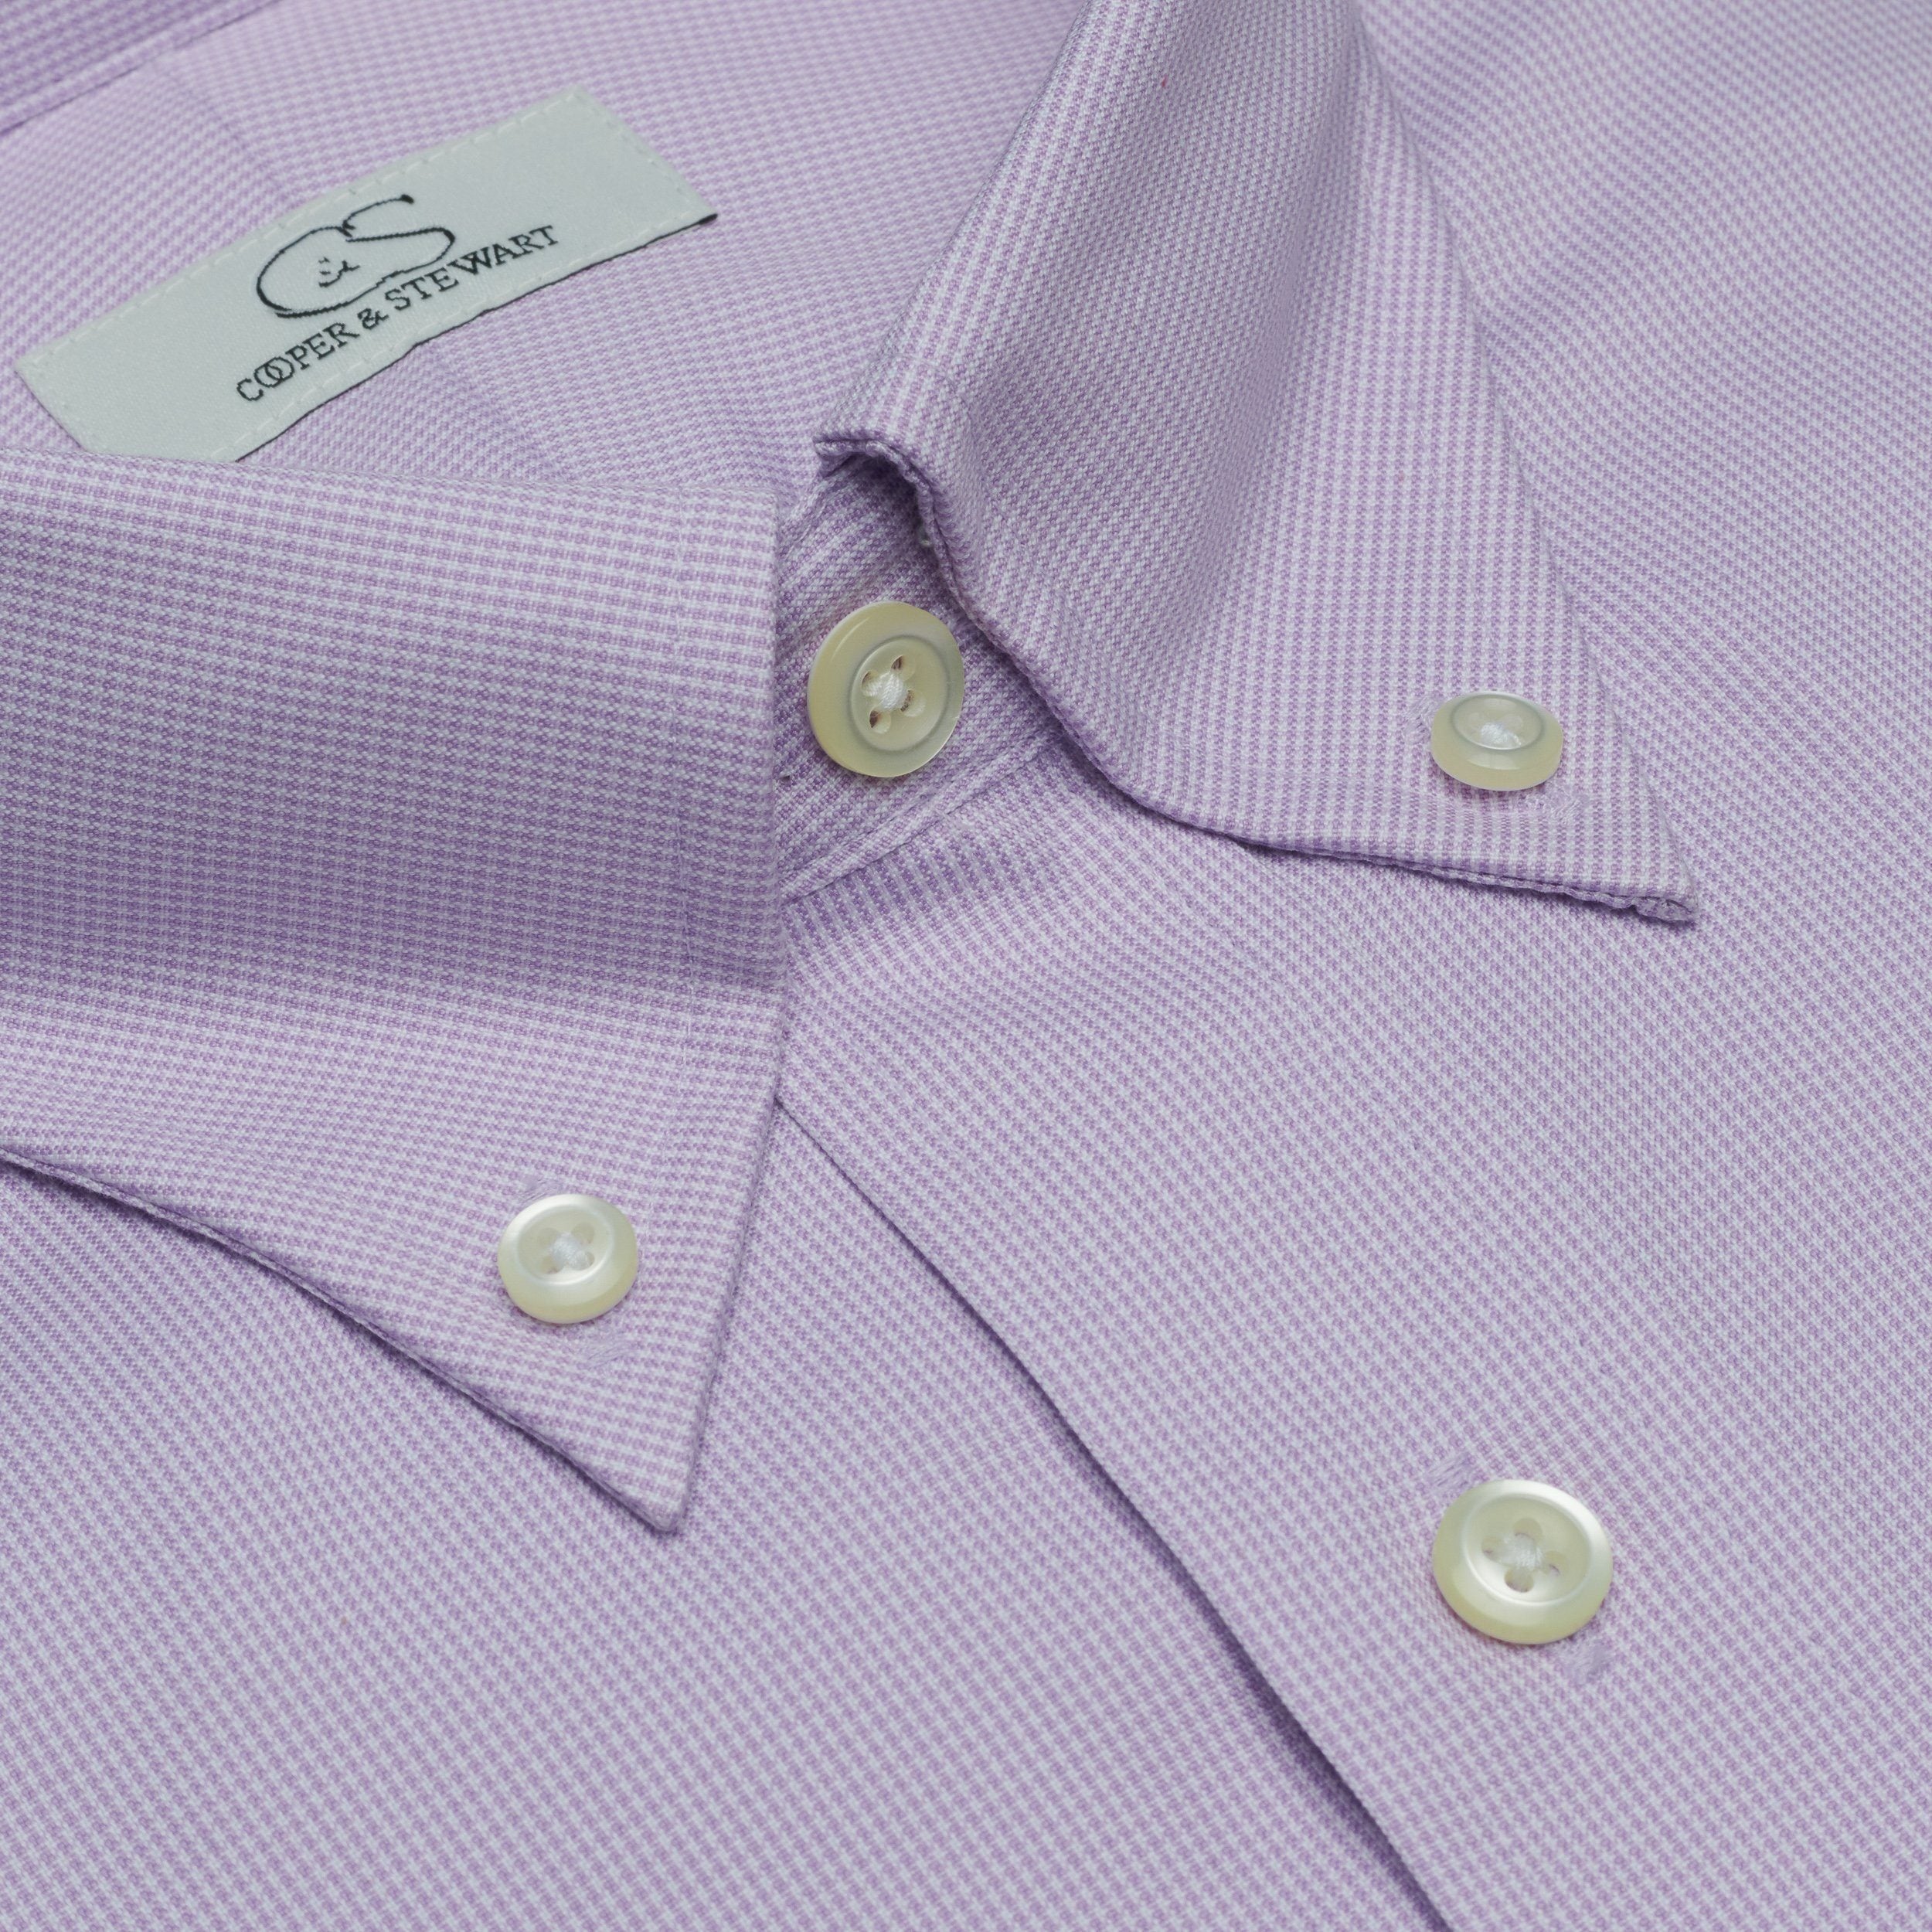 THE ABERDEEN - Lavender Houndstooth BD Dress Shirt Best Dress Shirt 